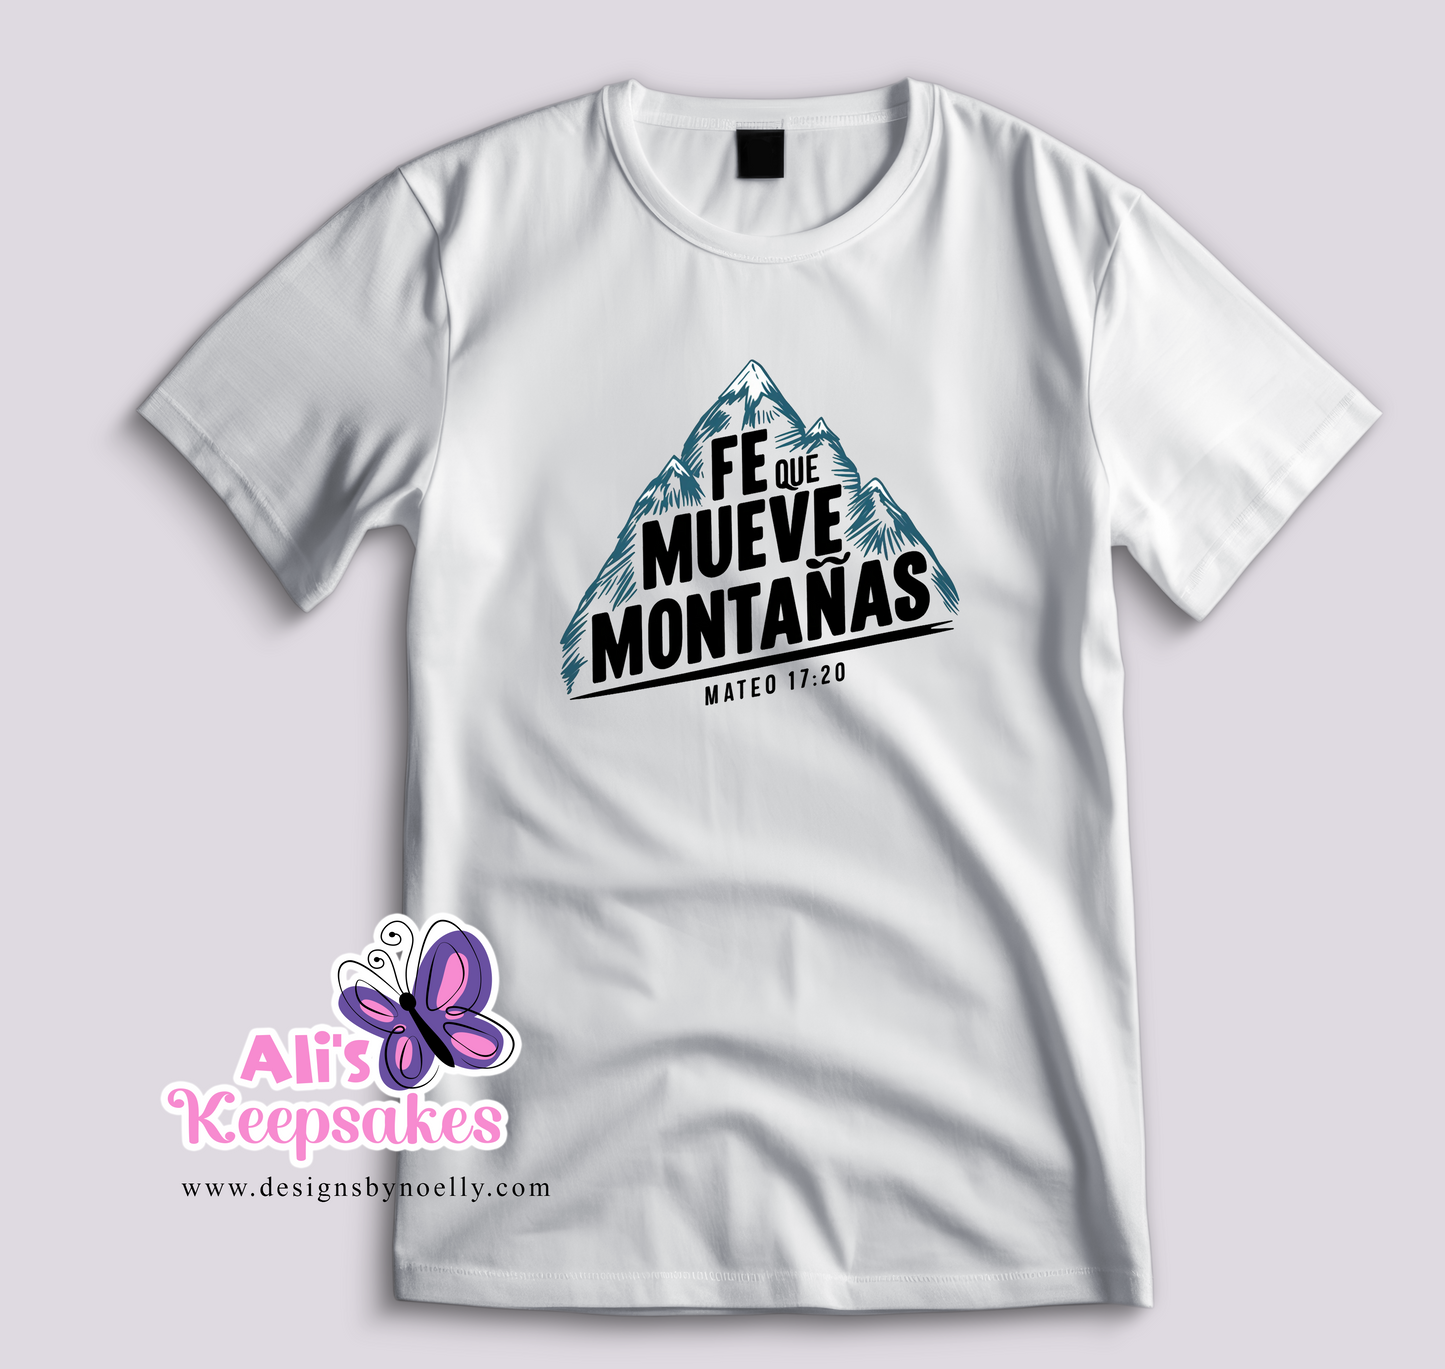 T-Shirt "Fe que mueve montanas"